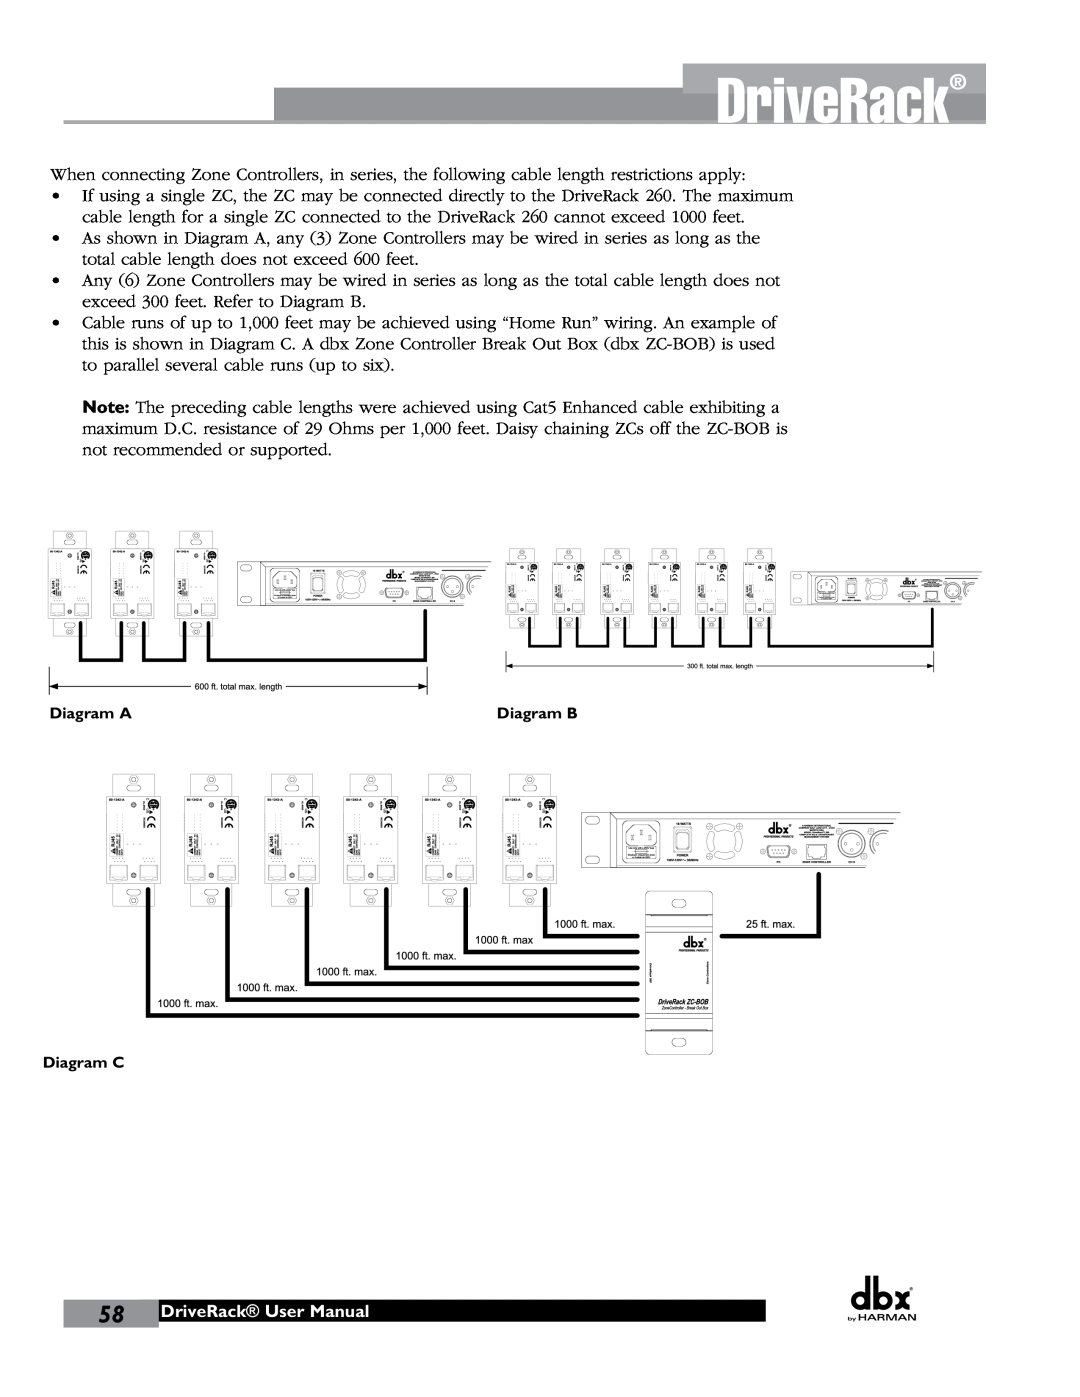 JBL 260 user manual DriveRack User Manual, Diagram A, Diagram B, Diagram C 